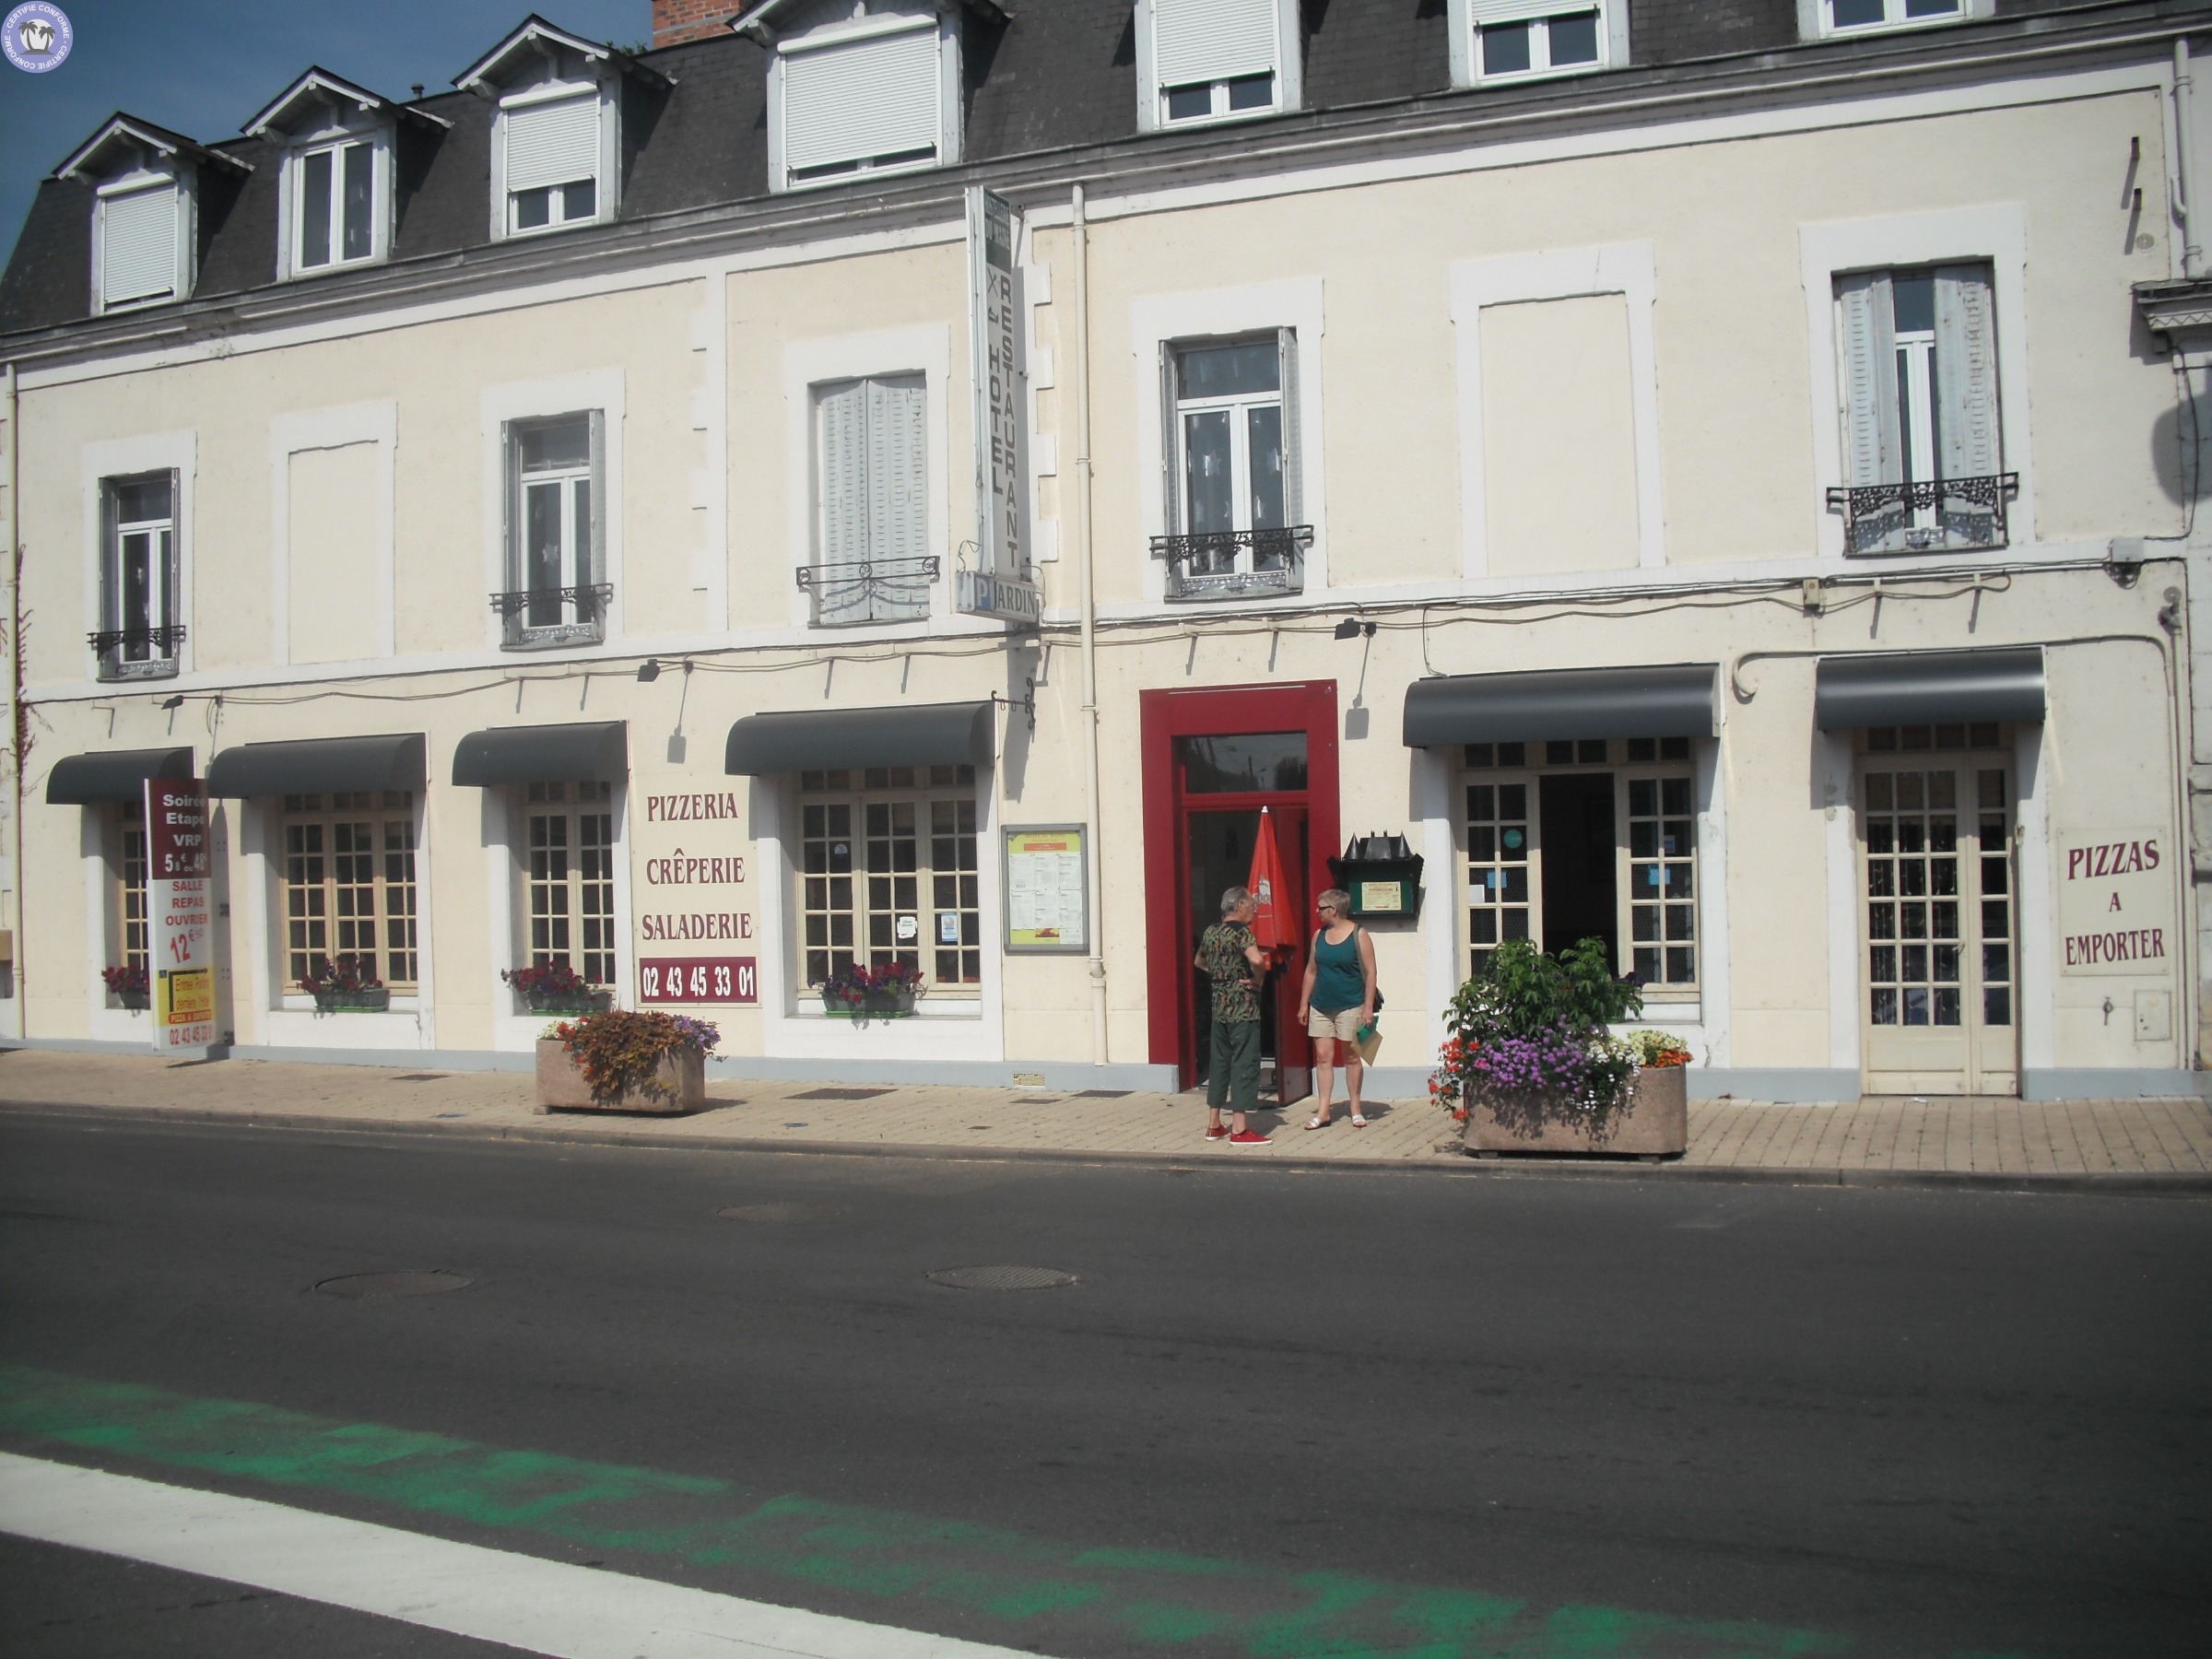 Gites-amp-Chambres-d-hotes-Pays-de-la-Loire-Sarthe-hotel-pizzeria-grill7112444525866677677.jpg